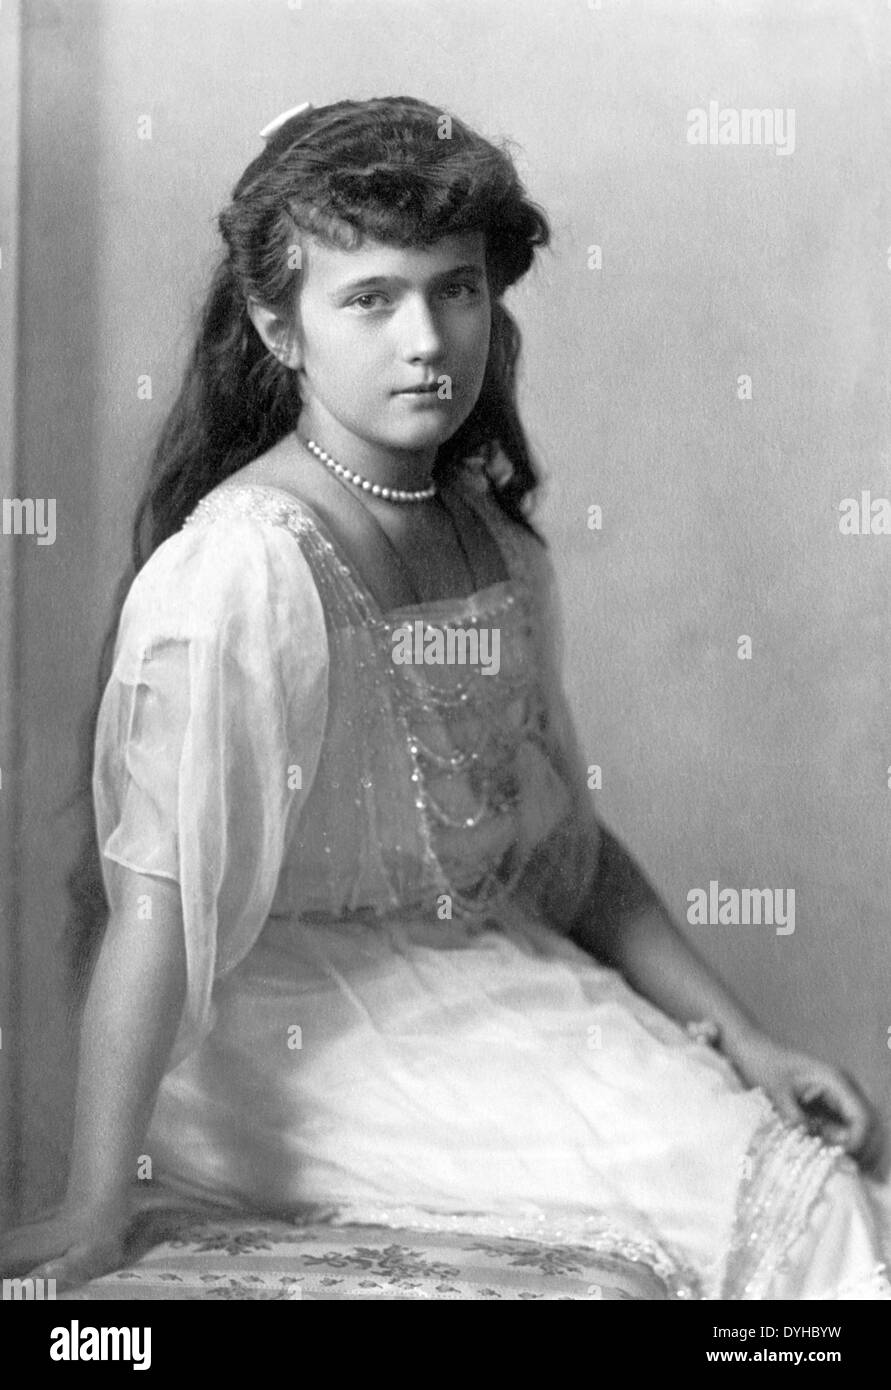 La granduchessa ANASTASIA NIKOLAEVNA della Russia (1901-1918) più giovane figlia dello Zar Nicola II, circa 1914 Foto Stock